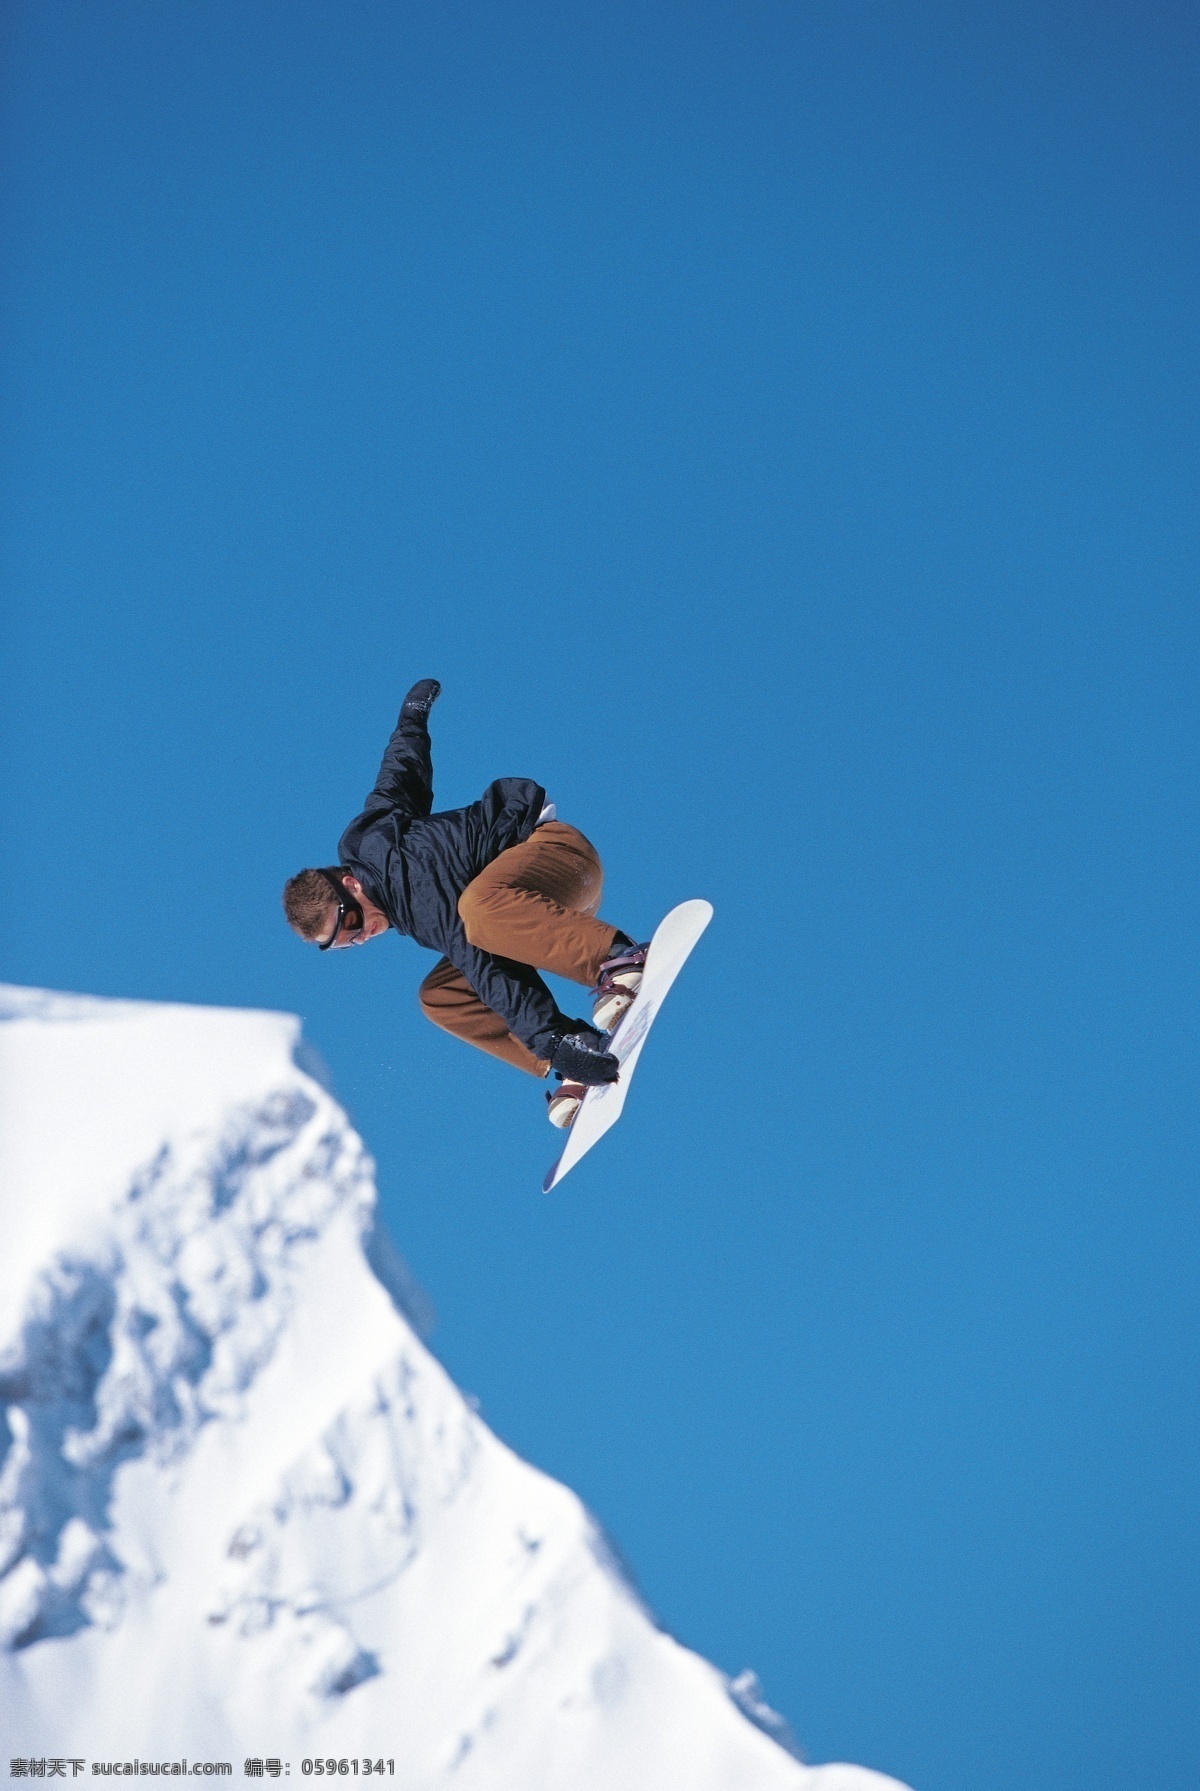 跳跃 滑雪 人物 美丽 自然 雪地 冬季 运动 雪山 极限运动 体育运动 斜坡 蓝天 滑雪图片 生活百科